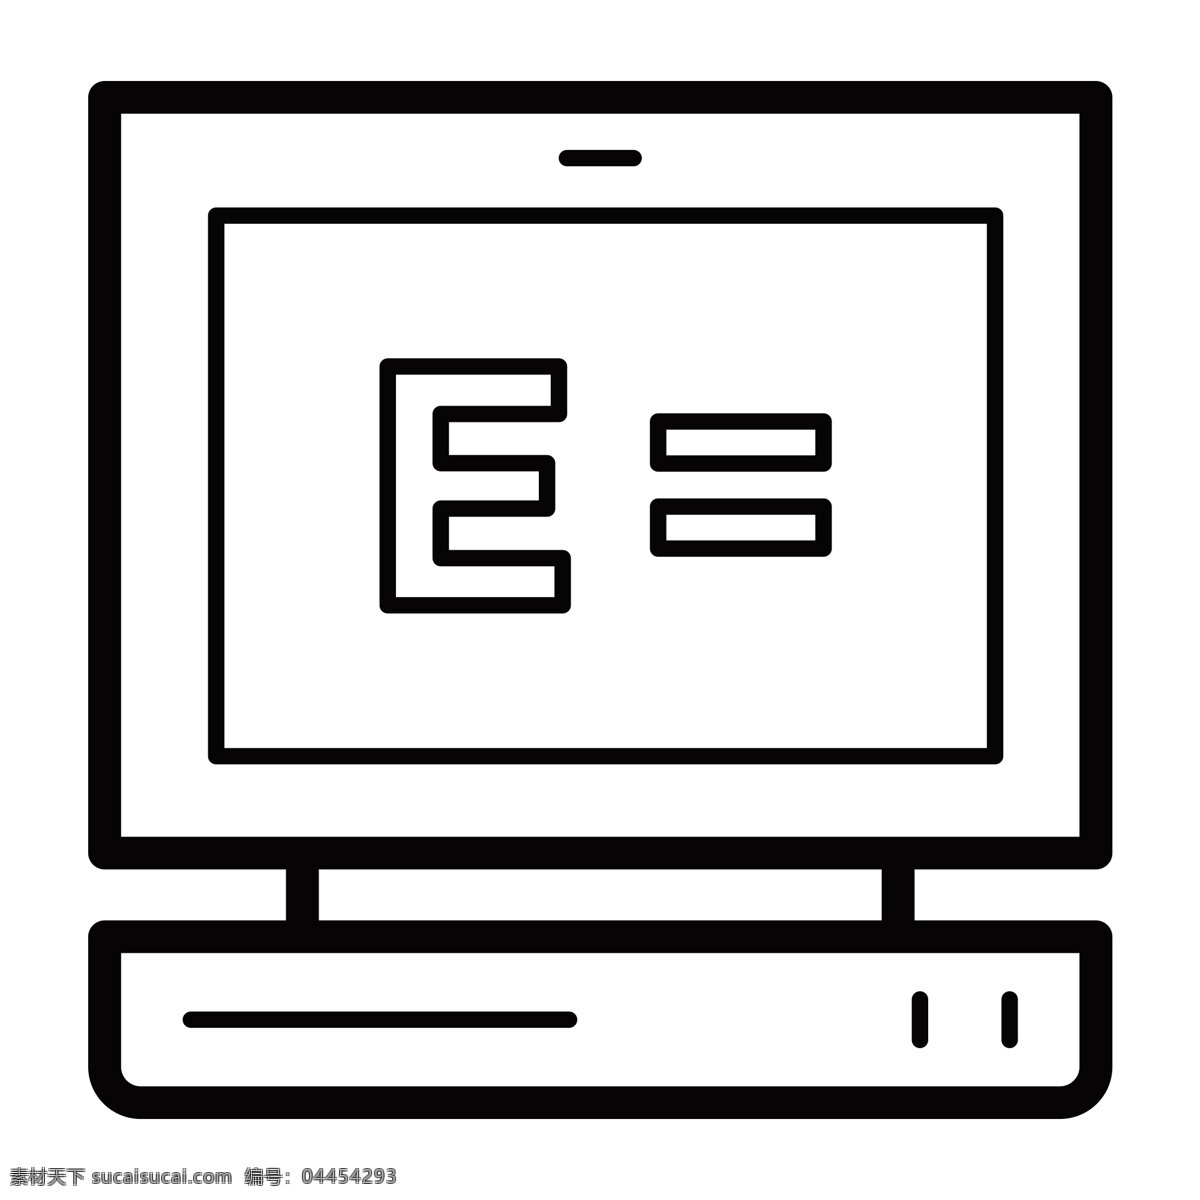 黑色 创意 科技 电脑 元素 商务 纹理 扁平化 ui 图标 卡通插画 屏幕 显示